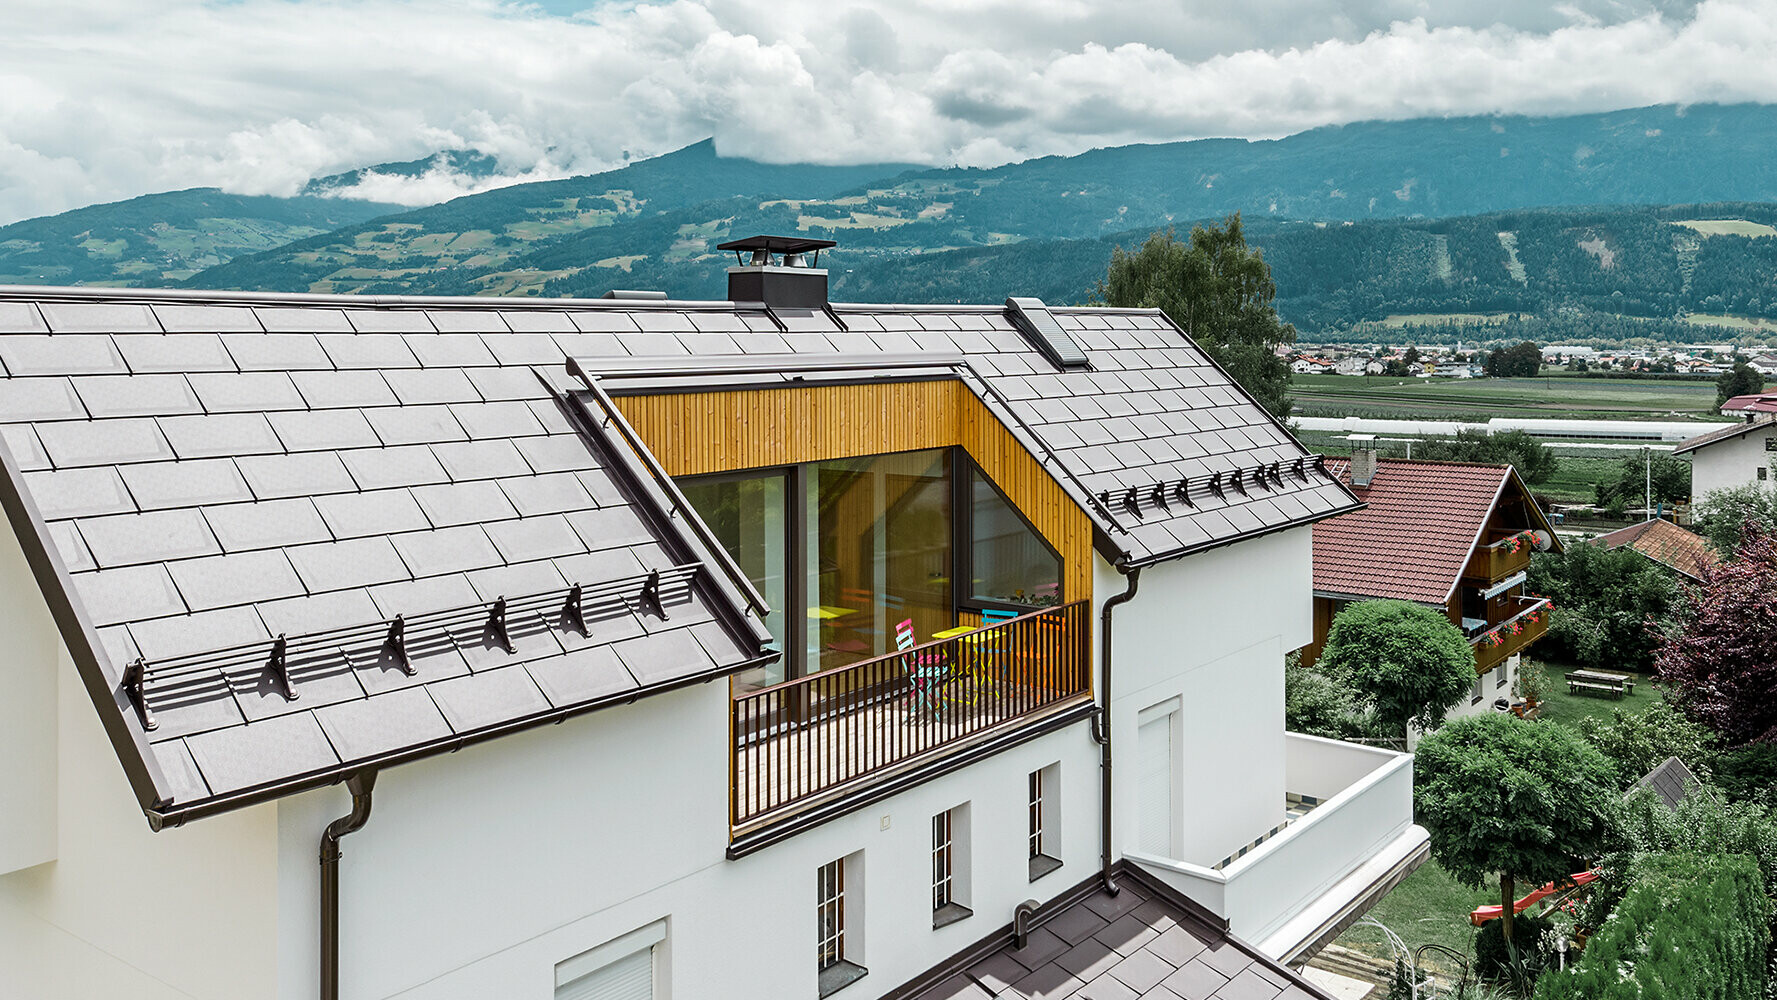 Wohnhaus eingedeckt mit der Aluminium Dachplatte R.16 in Nussbraun von PREFA mit großem Balkon und heller Putzfassade.